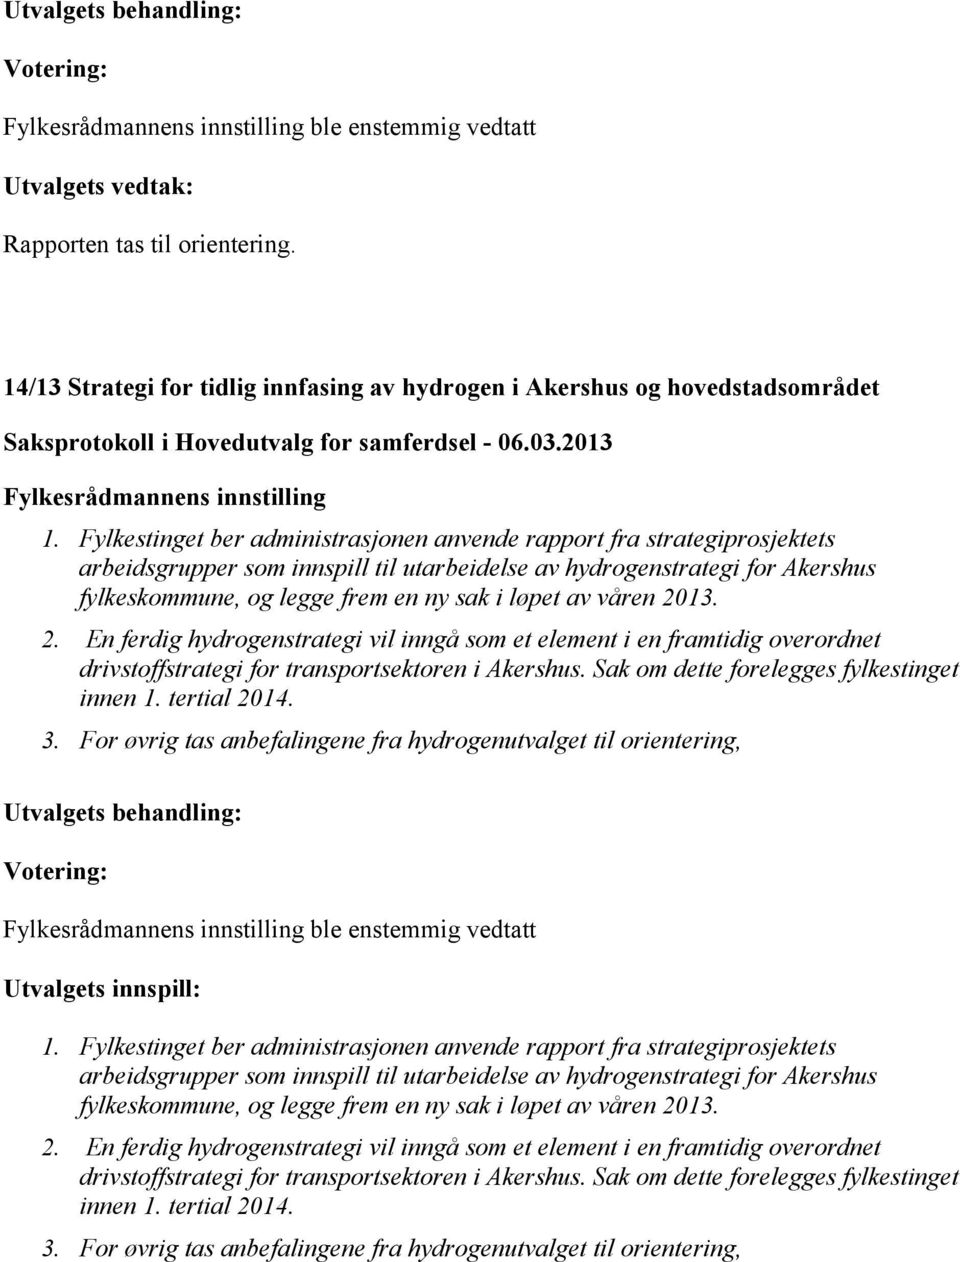 Fylkestinget ber administrasjonen anvende rapport fra strategiprosjektets arbeidsgrupper som innspill til utarbeidelse av hydrogenstrategi for Akershus fylkeskommune, og legge frem en ny sak i løpet